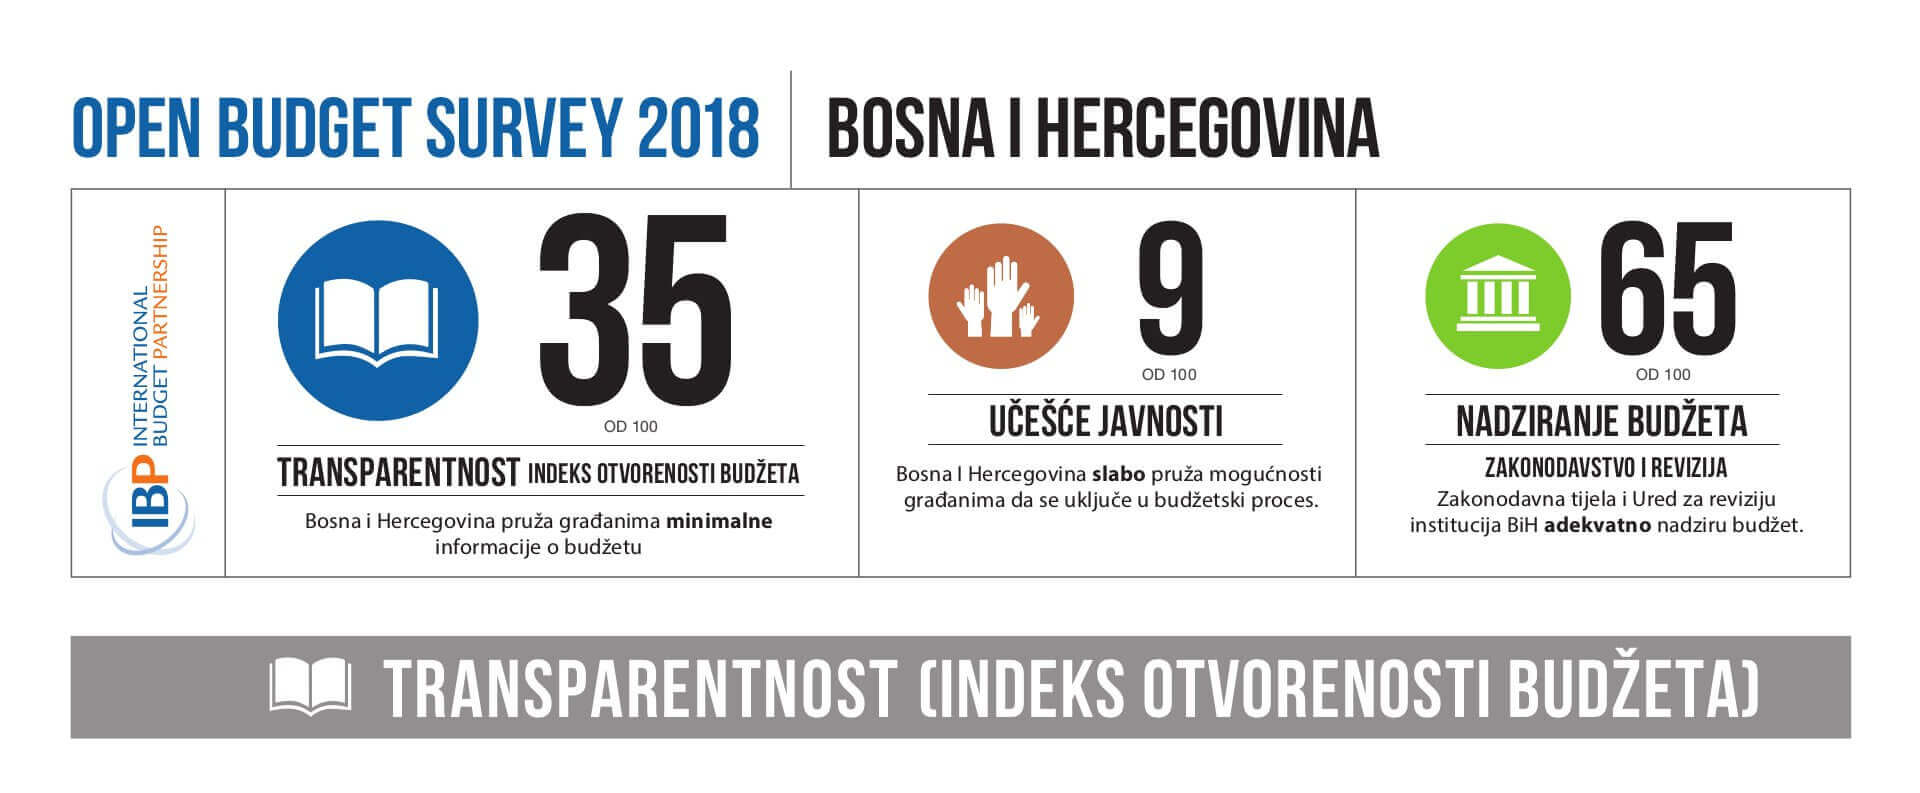 Open Budget Survey 2018 - Bosna i Hercegovina